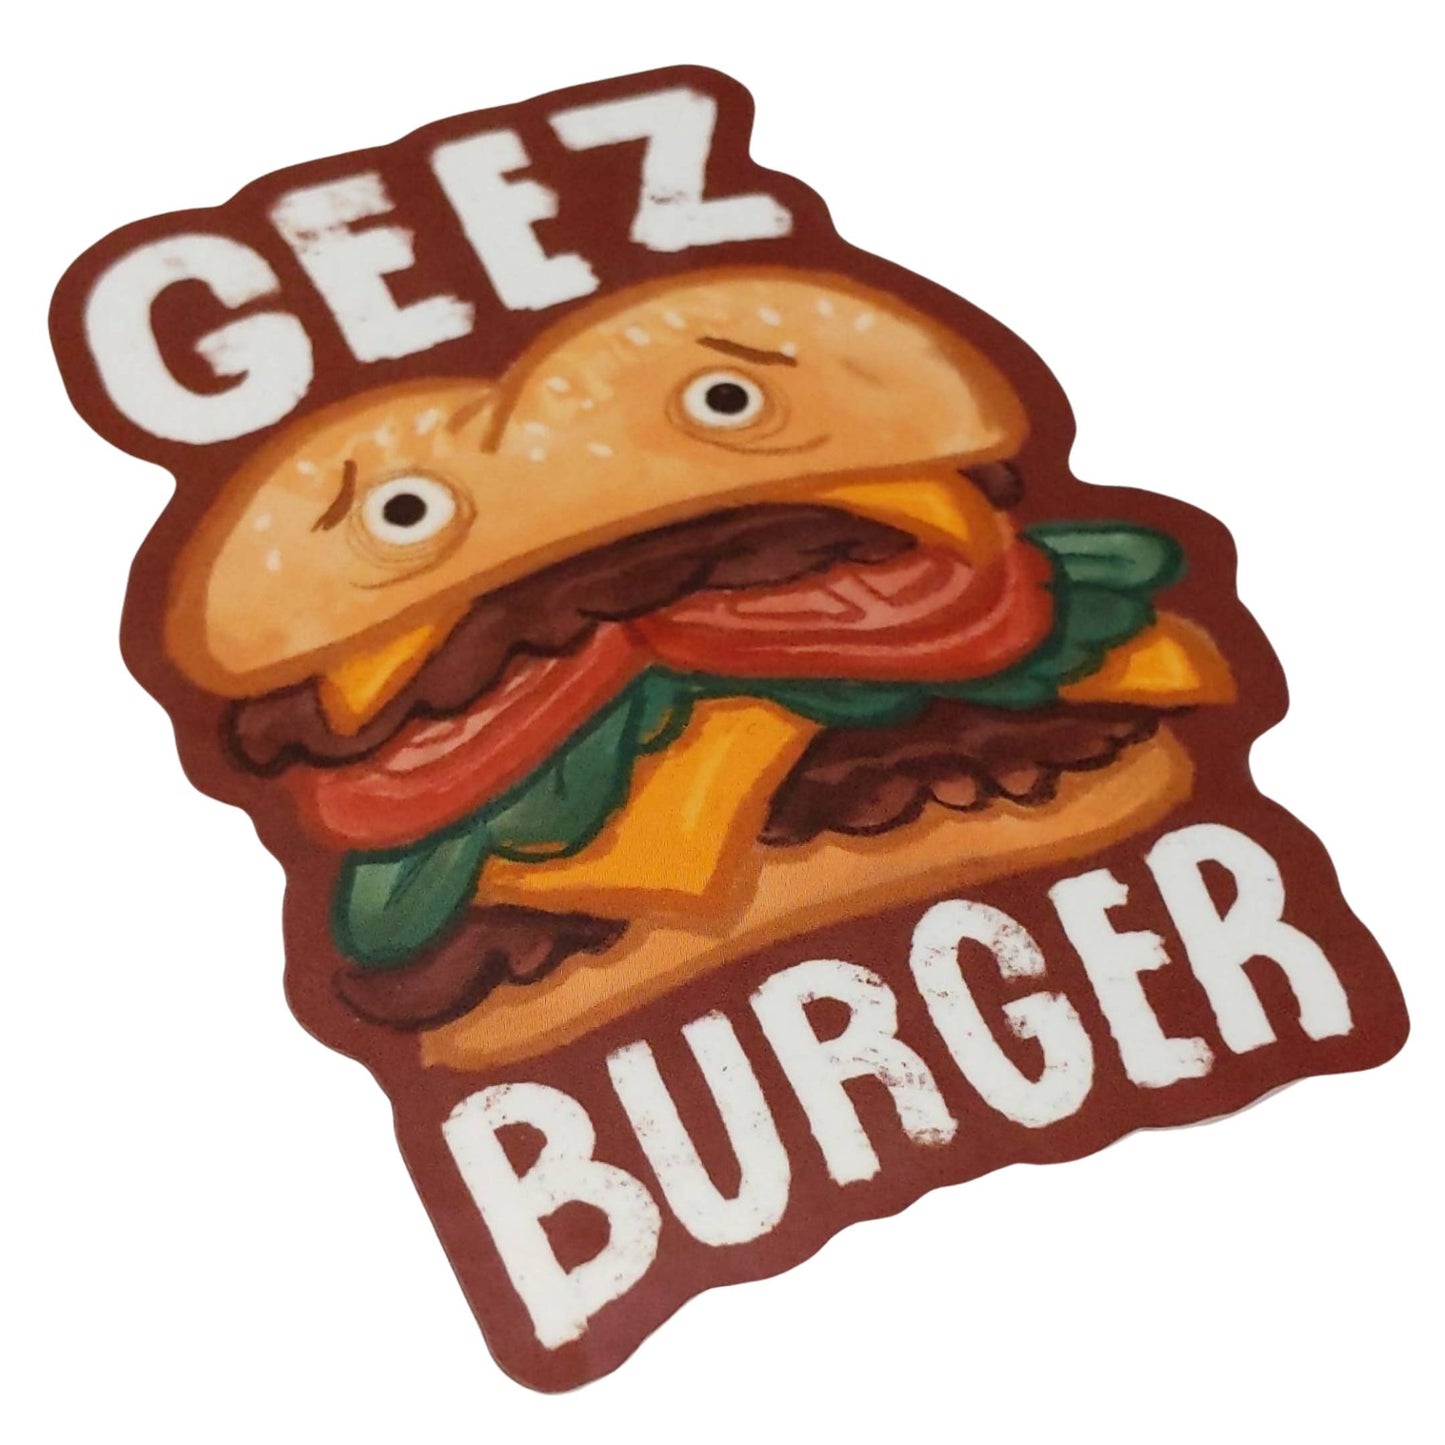 Geez Burger Sticker